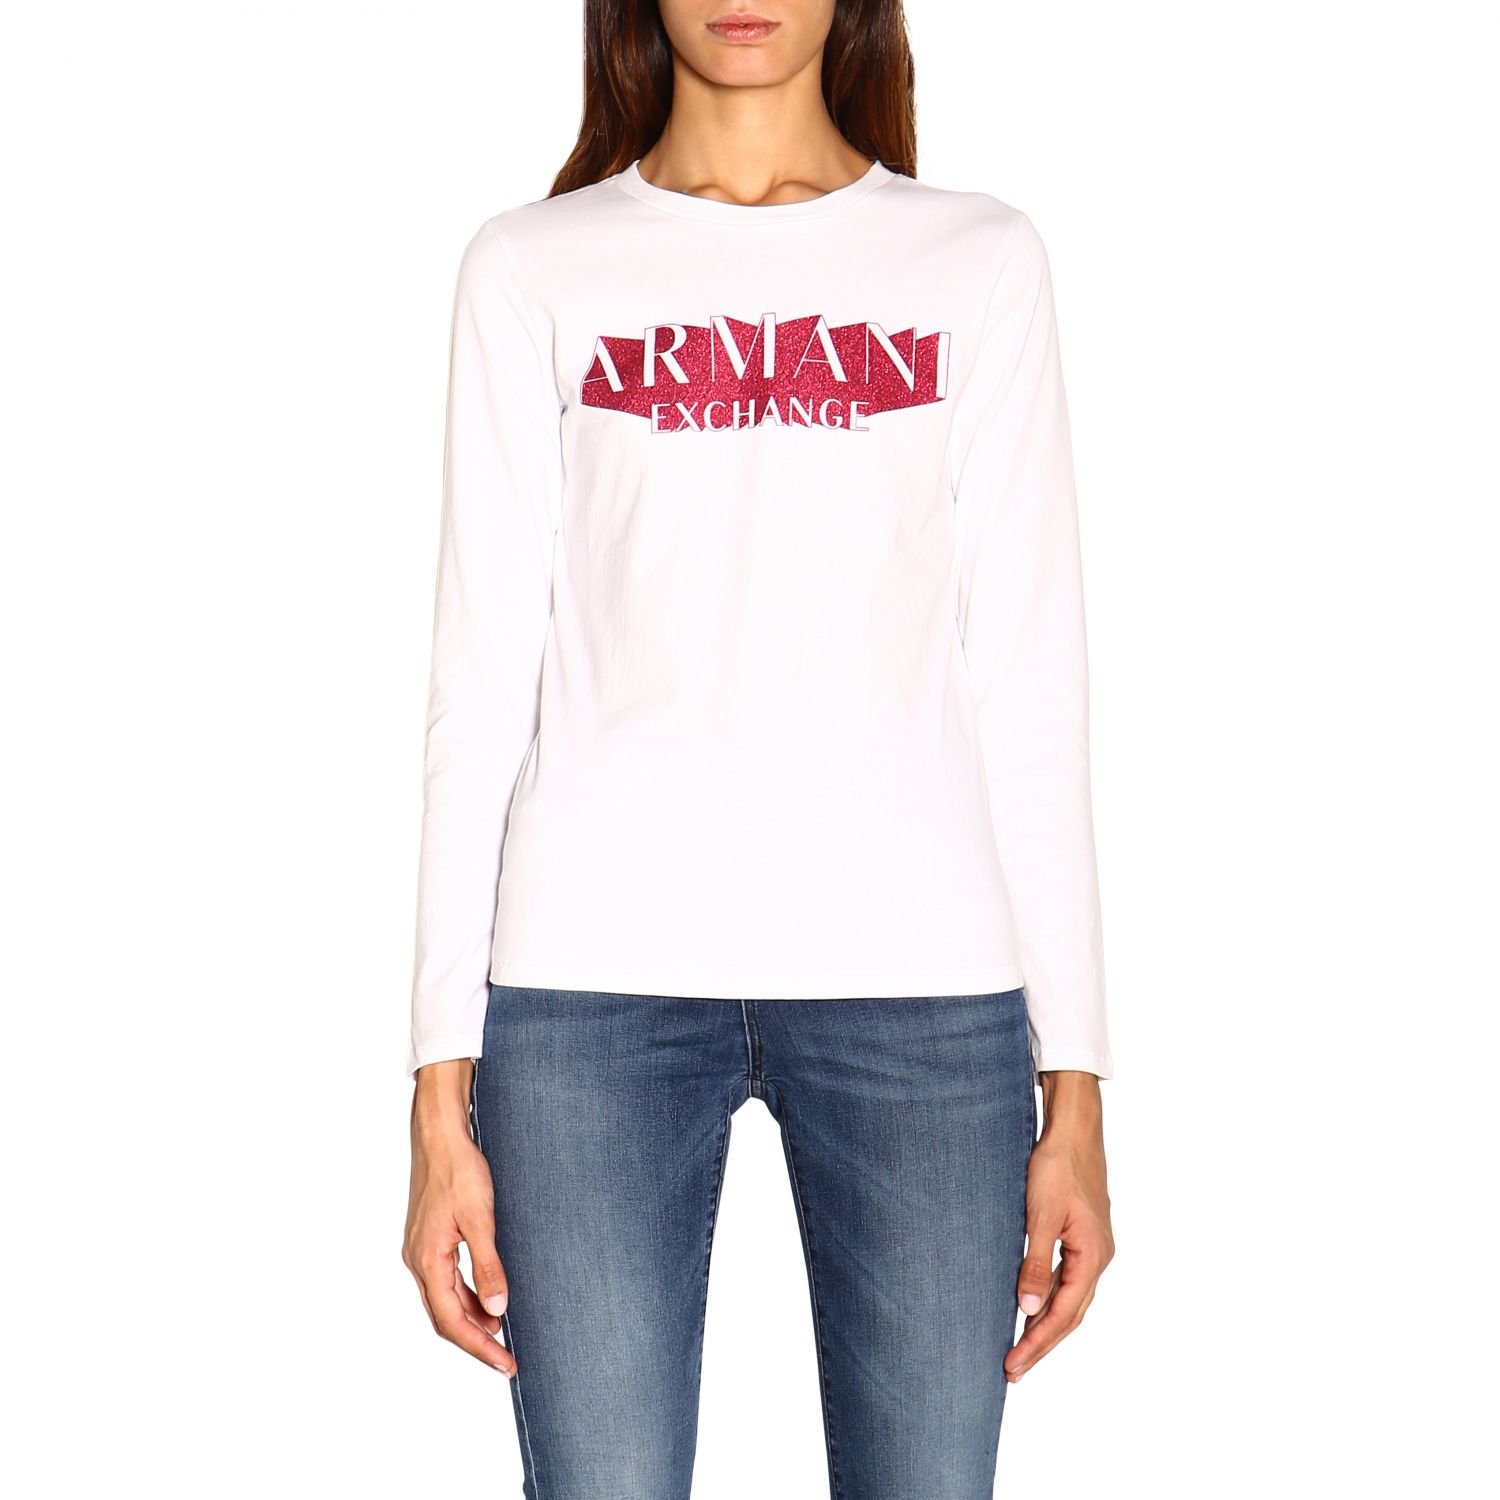 Armani Exchange Outlet: T-shirt women - White | T-Shirt Armani Exchange ...